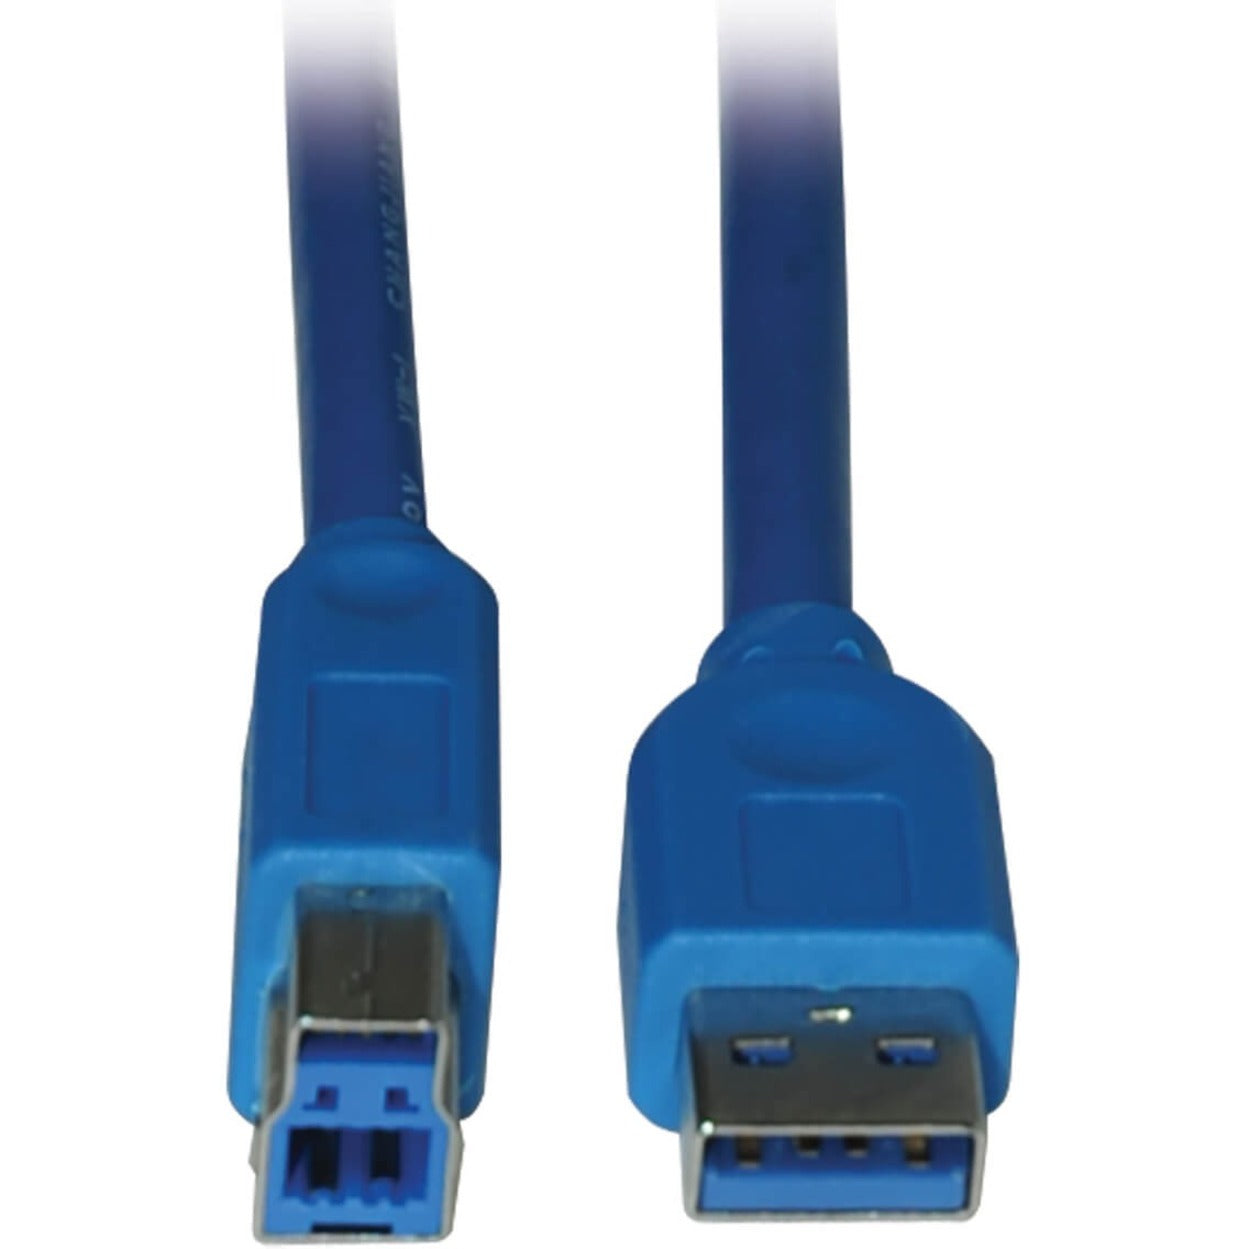 Tripp Lite U322-006 Cable de Dispositivo USB 3.0 de Súper Velocidad AB 6FT Azul - Transferencia de Datos de Alta Velocidad para tus Dispositivos. Marca: Tripp Lite. Traducir la marca: Tripp Lite - Traducir Lite como "Ligero".